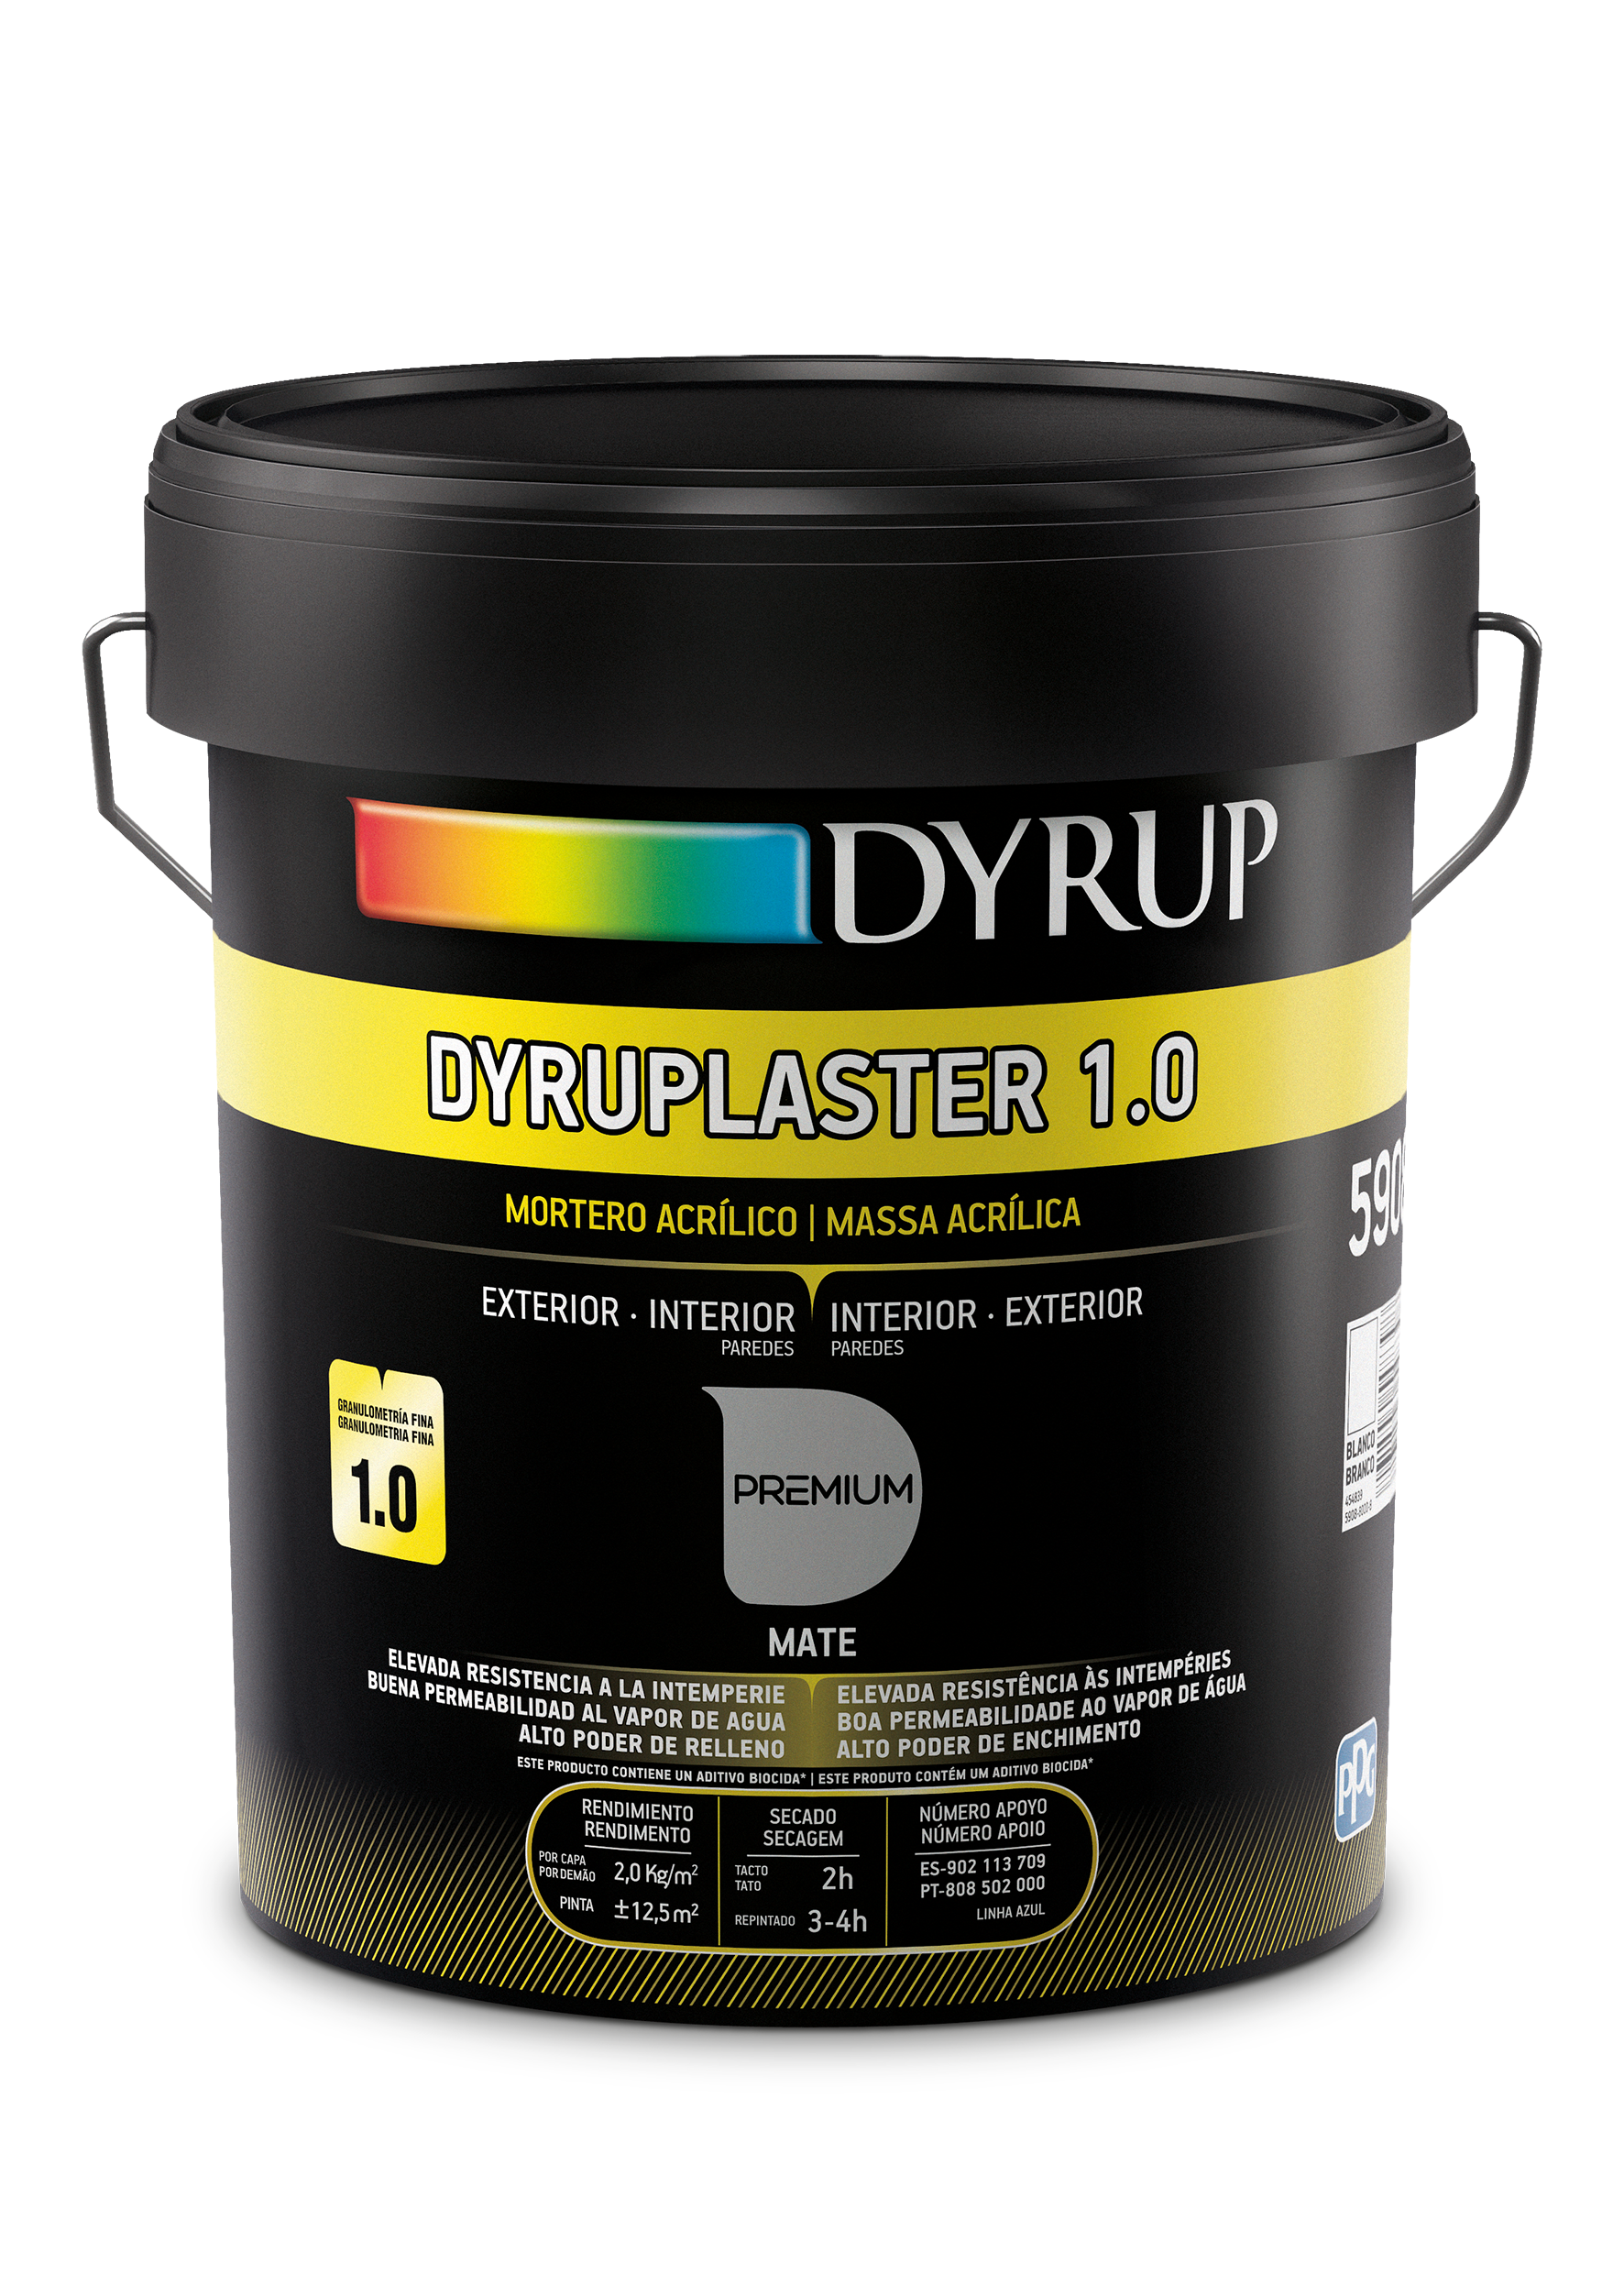 Dyrup Dyruplaster Acryl 1.0 - Massa Acrílica de Revestimento Areado Interior e Exterior